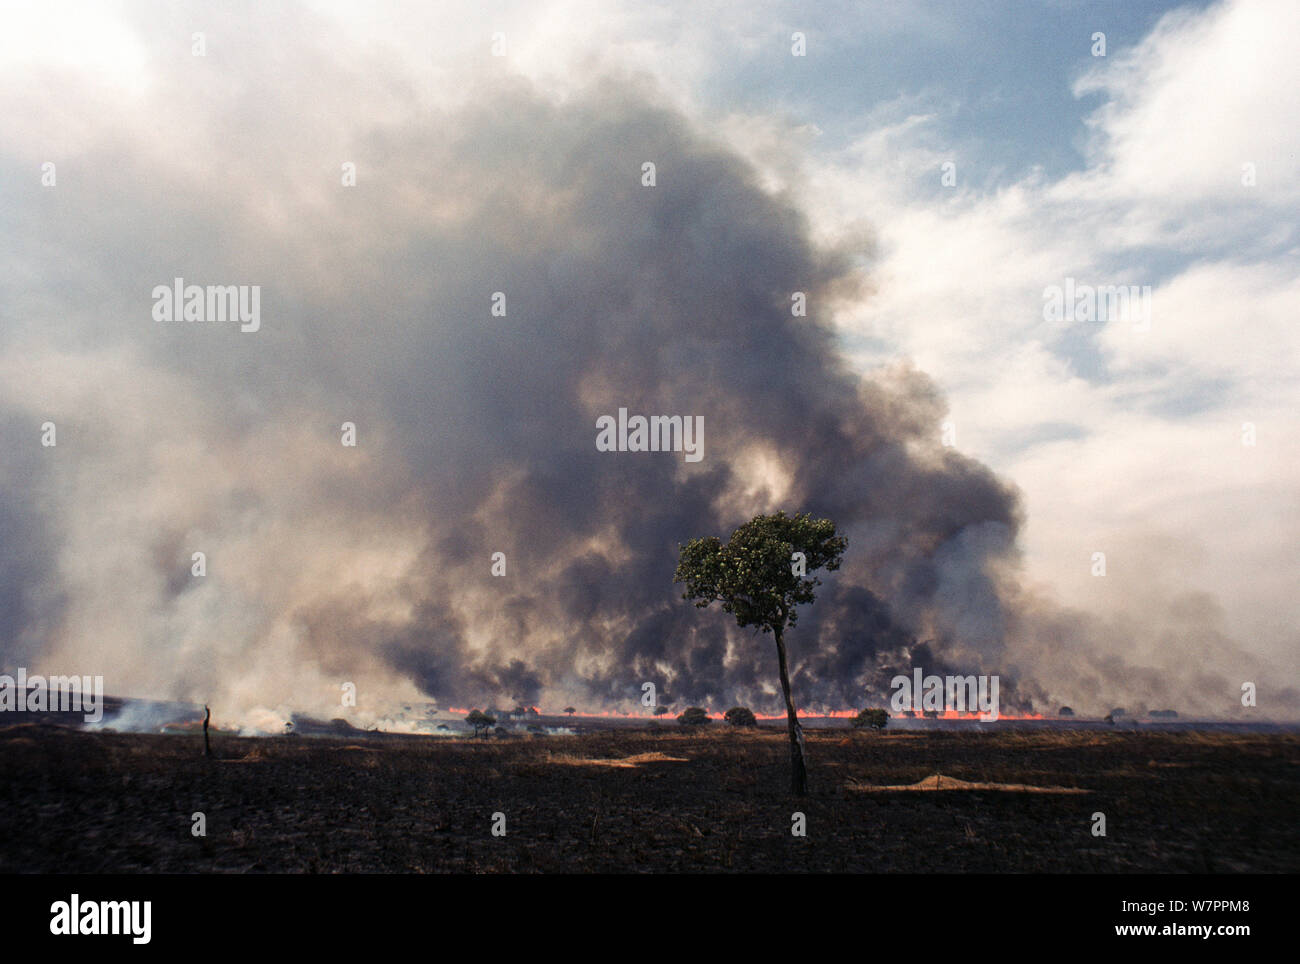 Umfangreiche heftige Gras Feuer, Savanne, während der Trockenzeit brennen, Garamba National Park, früher Zaire, jetzt Demokratische Republik Kongo Stockfoto